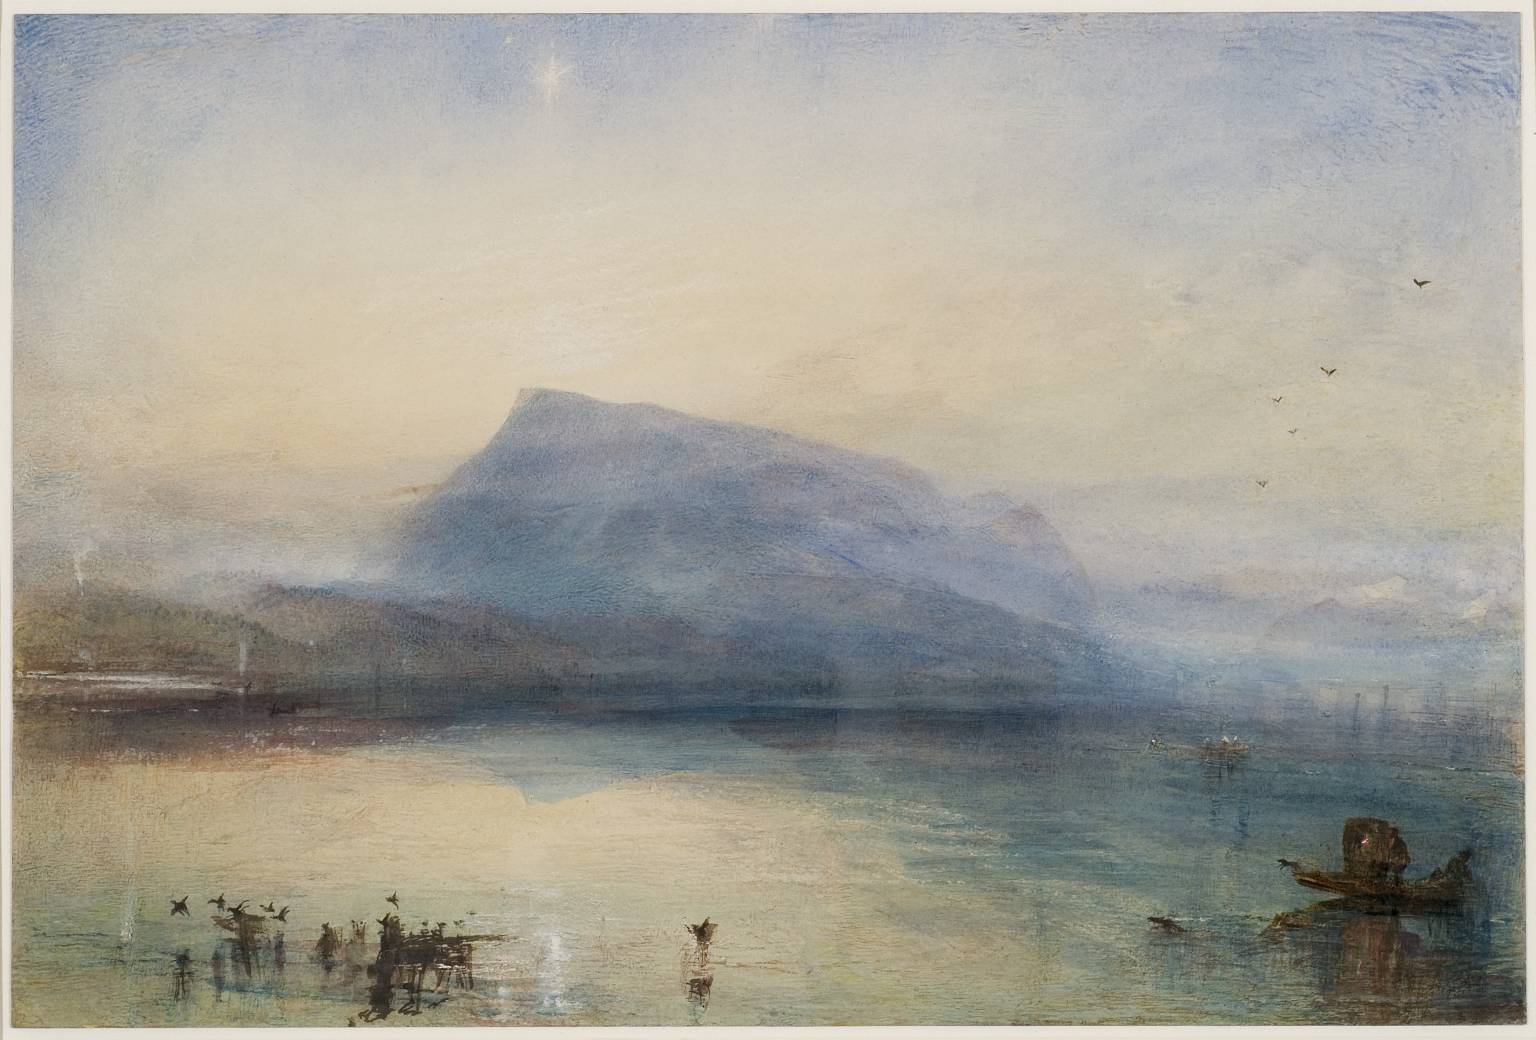 Niebieska Rigi, Wschód by Joseph Mallord William Turner - 1842 